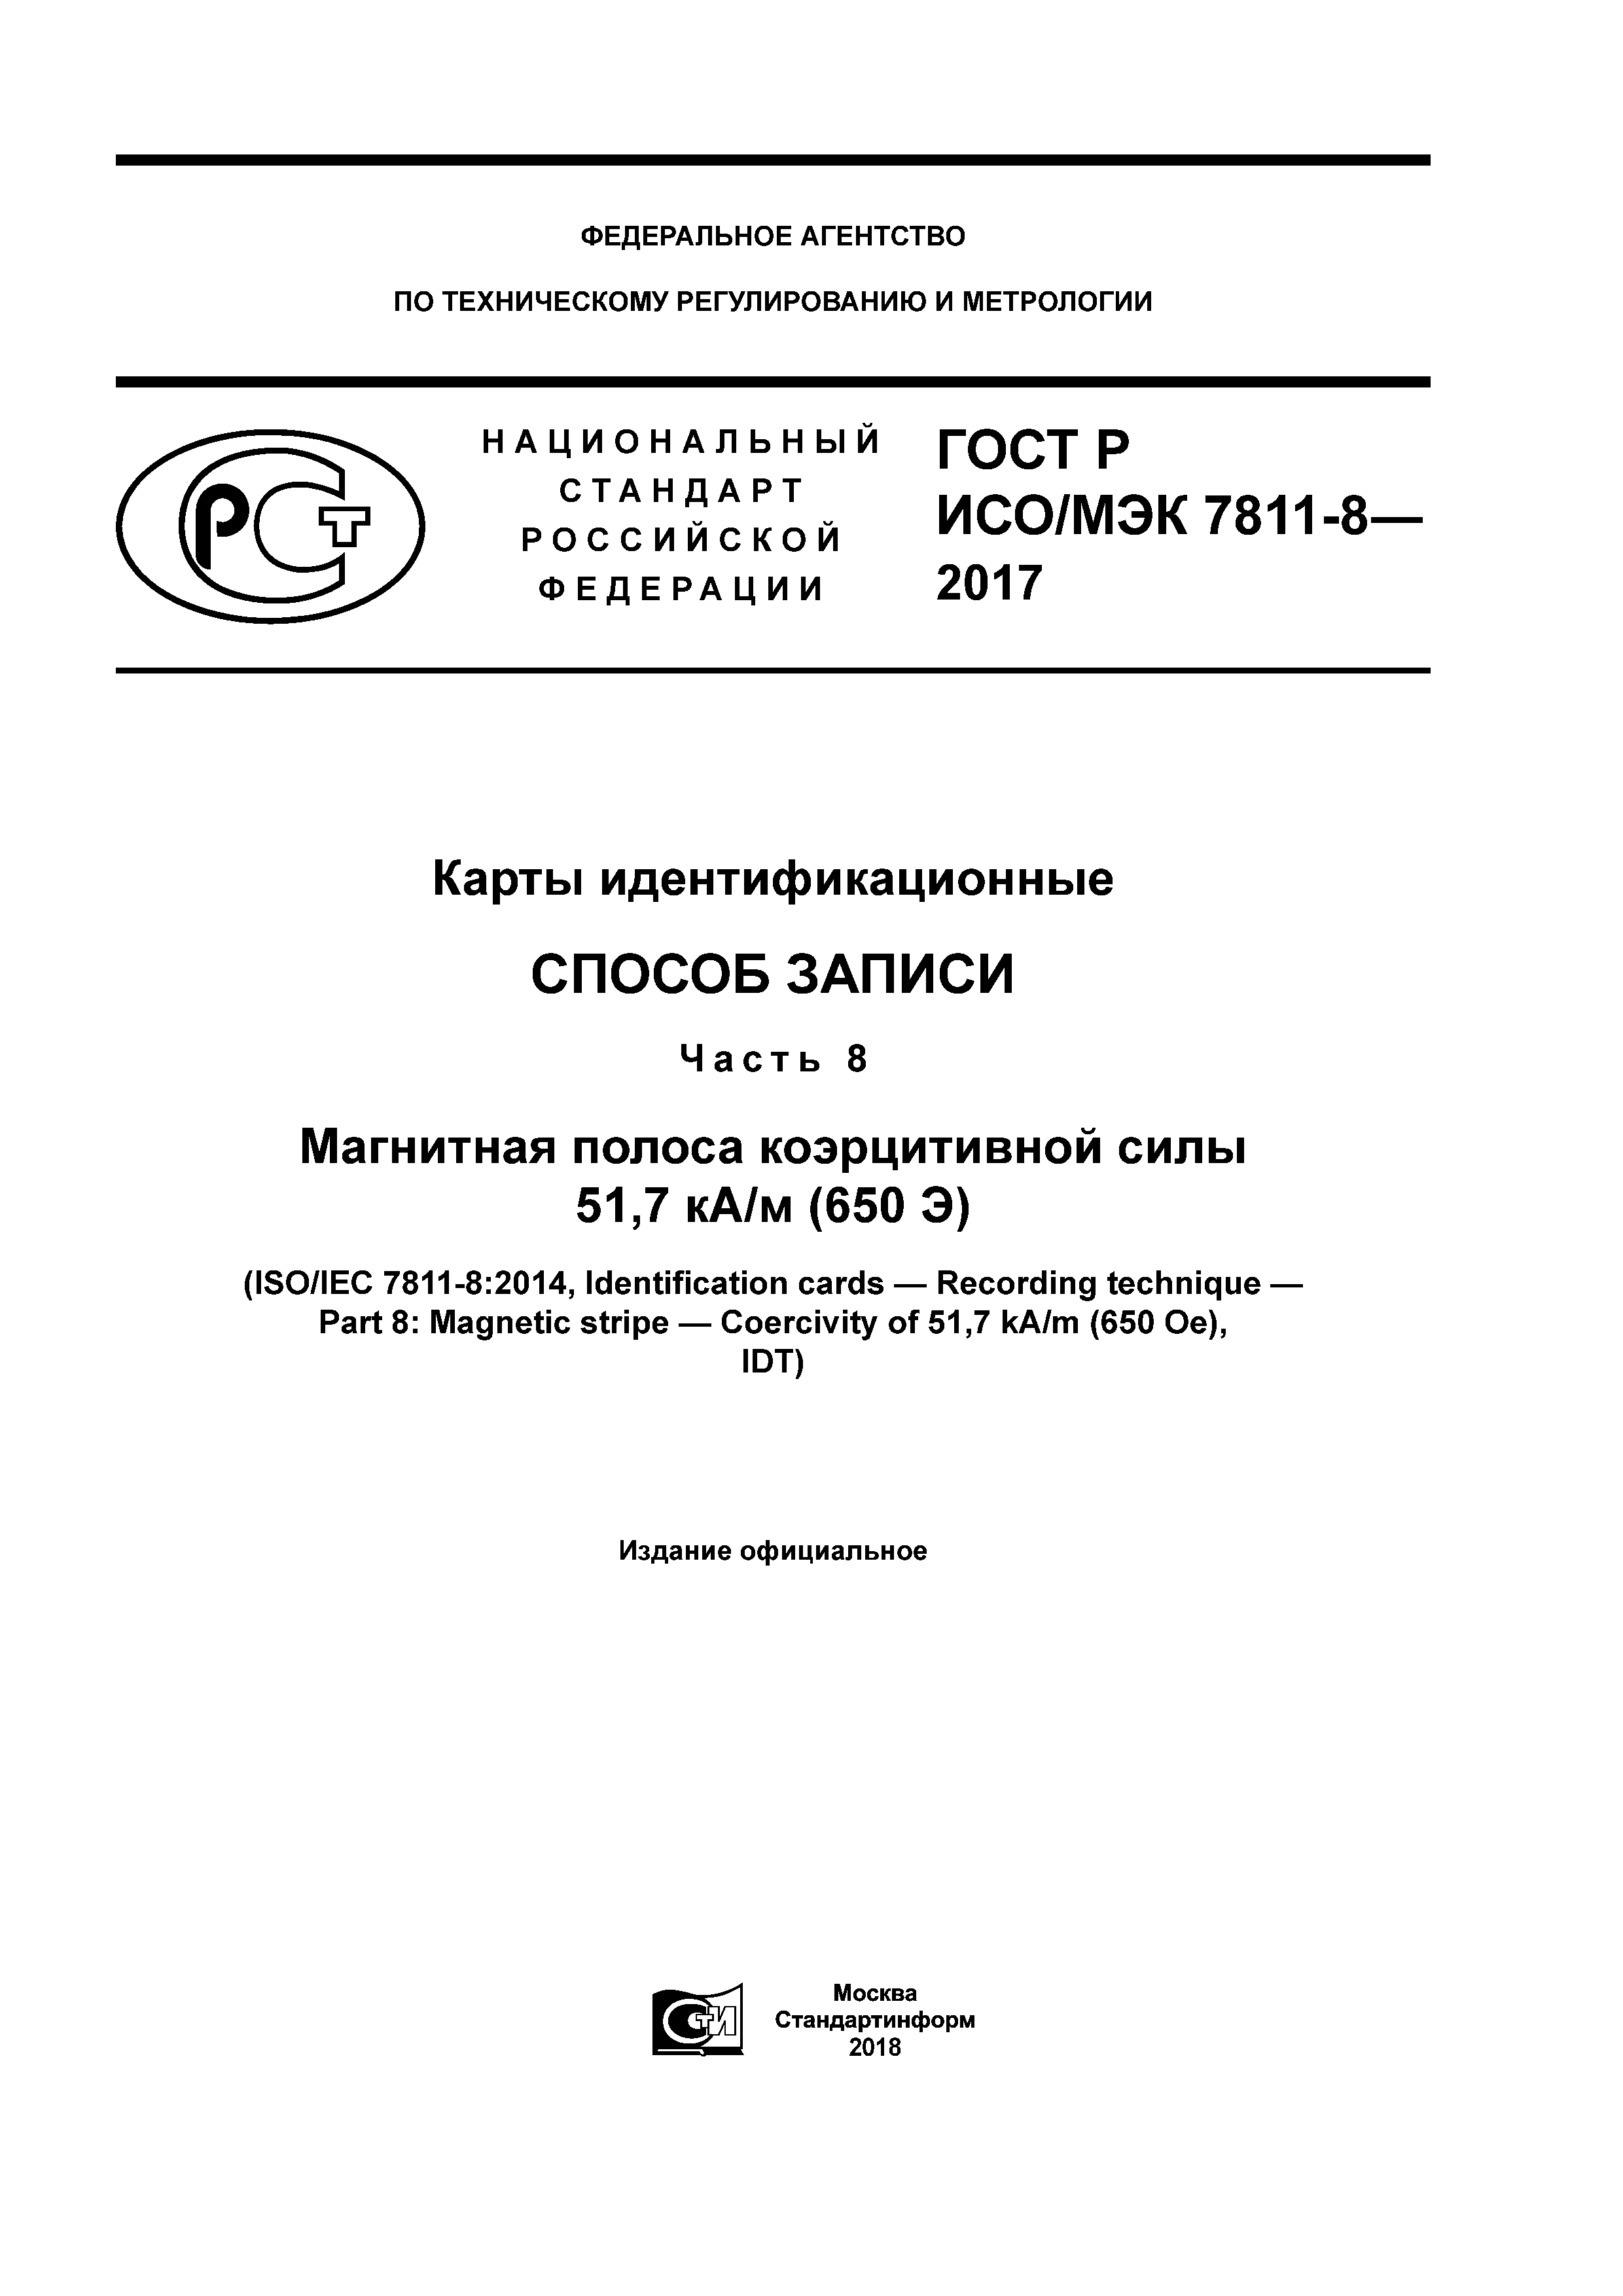 ГОСТ Р ИСО/МЭК 7811-8-2017